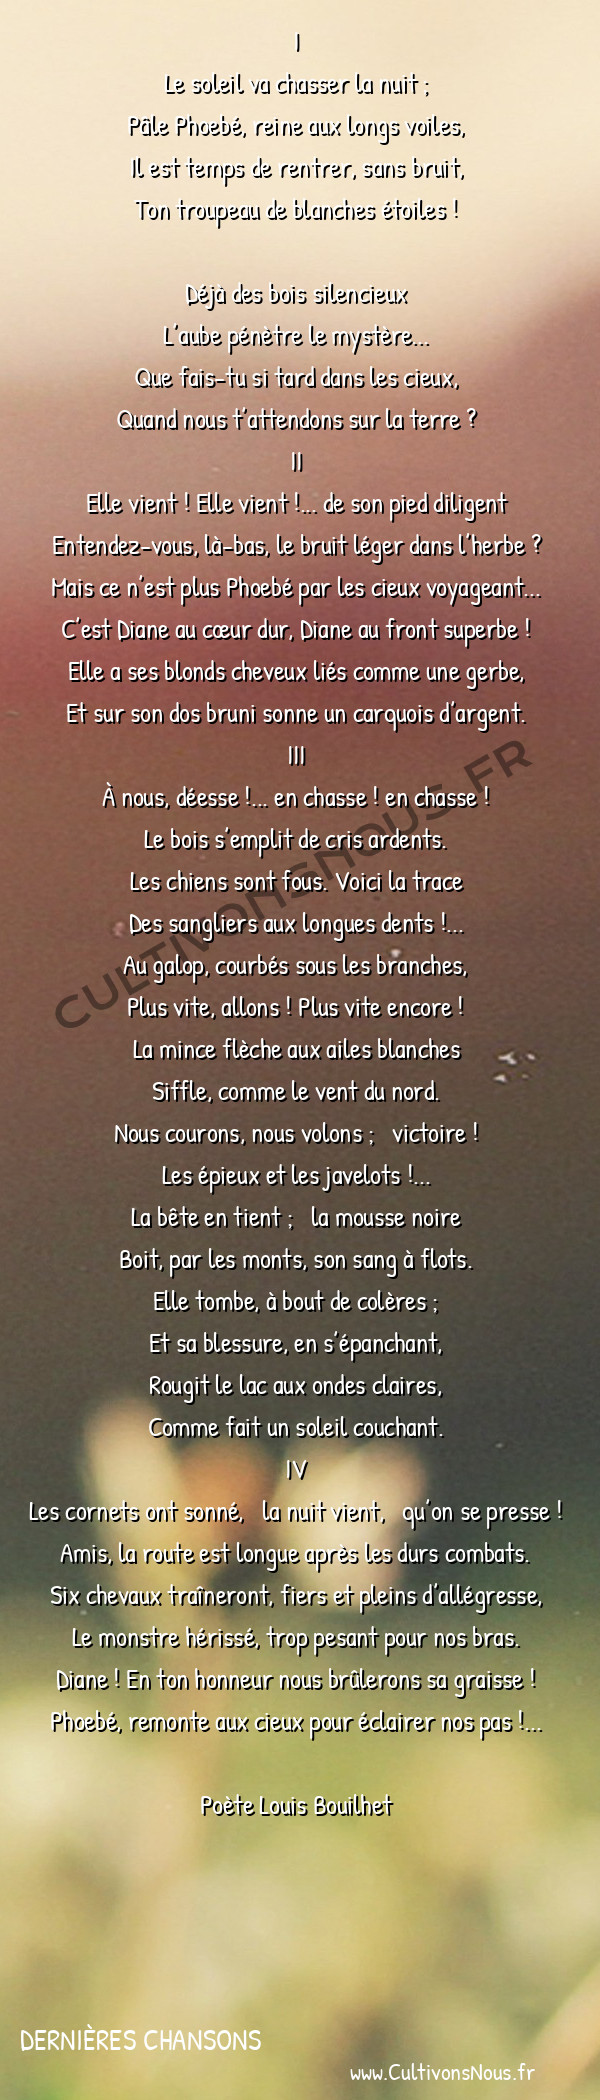  Poète Louis Bouilhet - Dernières chansons - Air de chasse -   I Le soleil va chasser la nuit ;